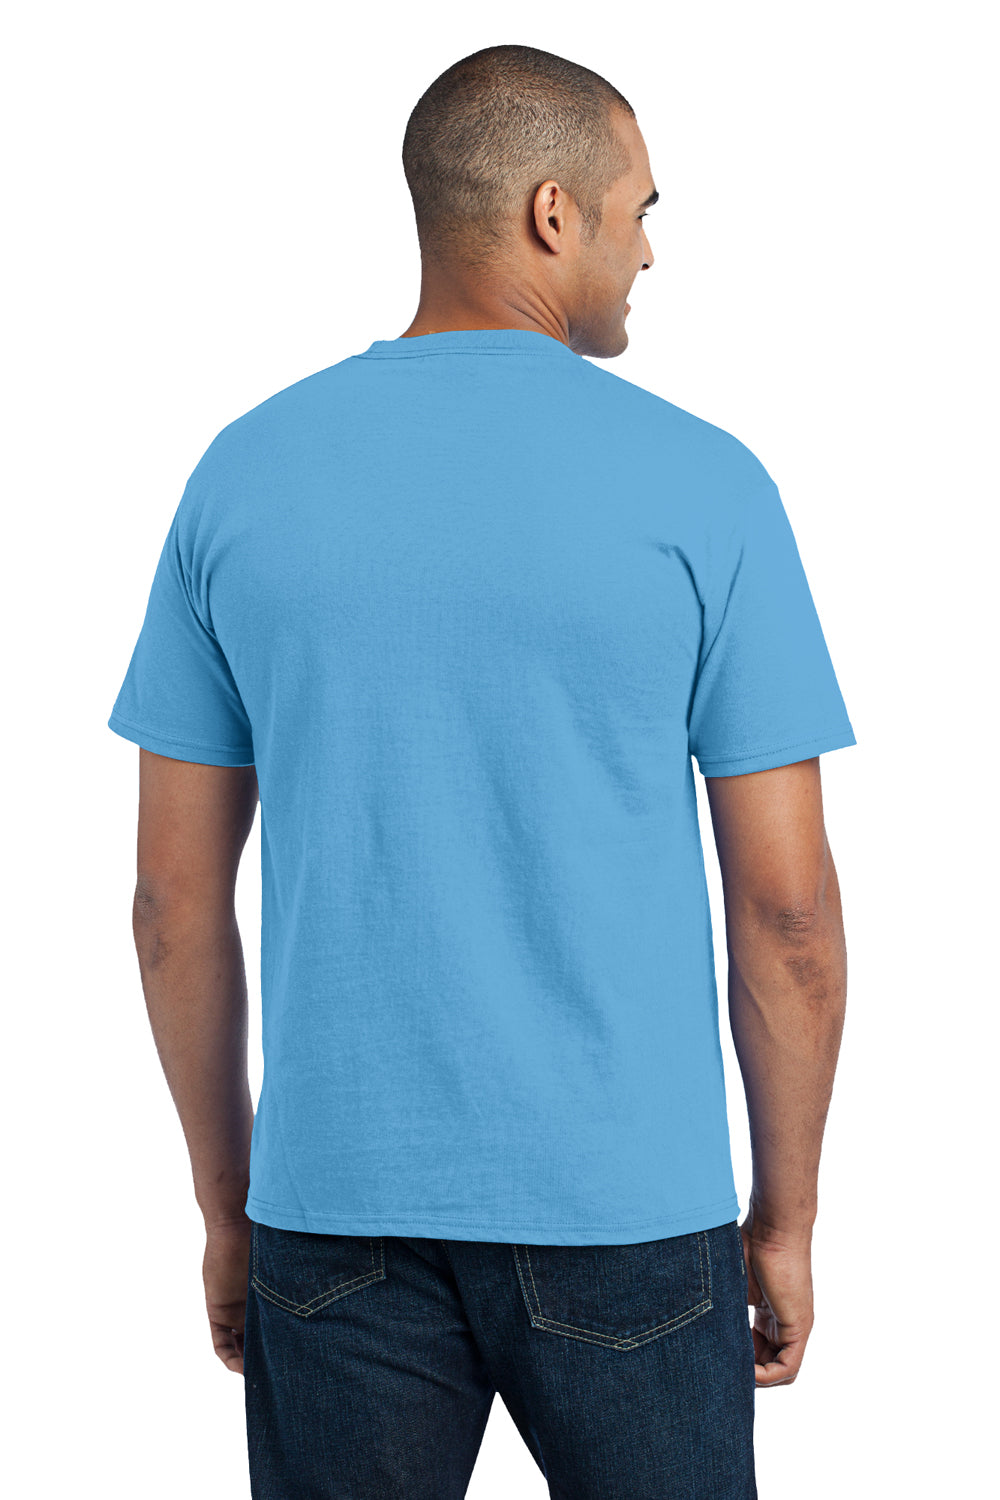 Port & Company PC55P Mens Core Short Sleeve Crewneck T-Shirt w/ Pocket Aqua Blue Back